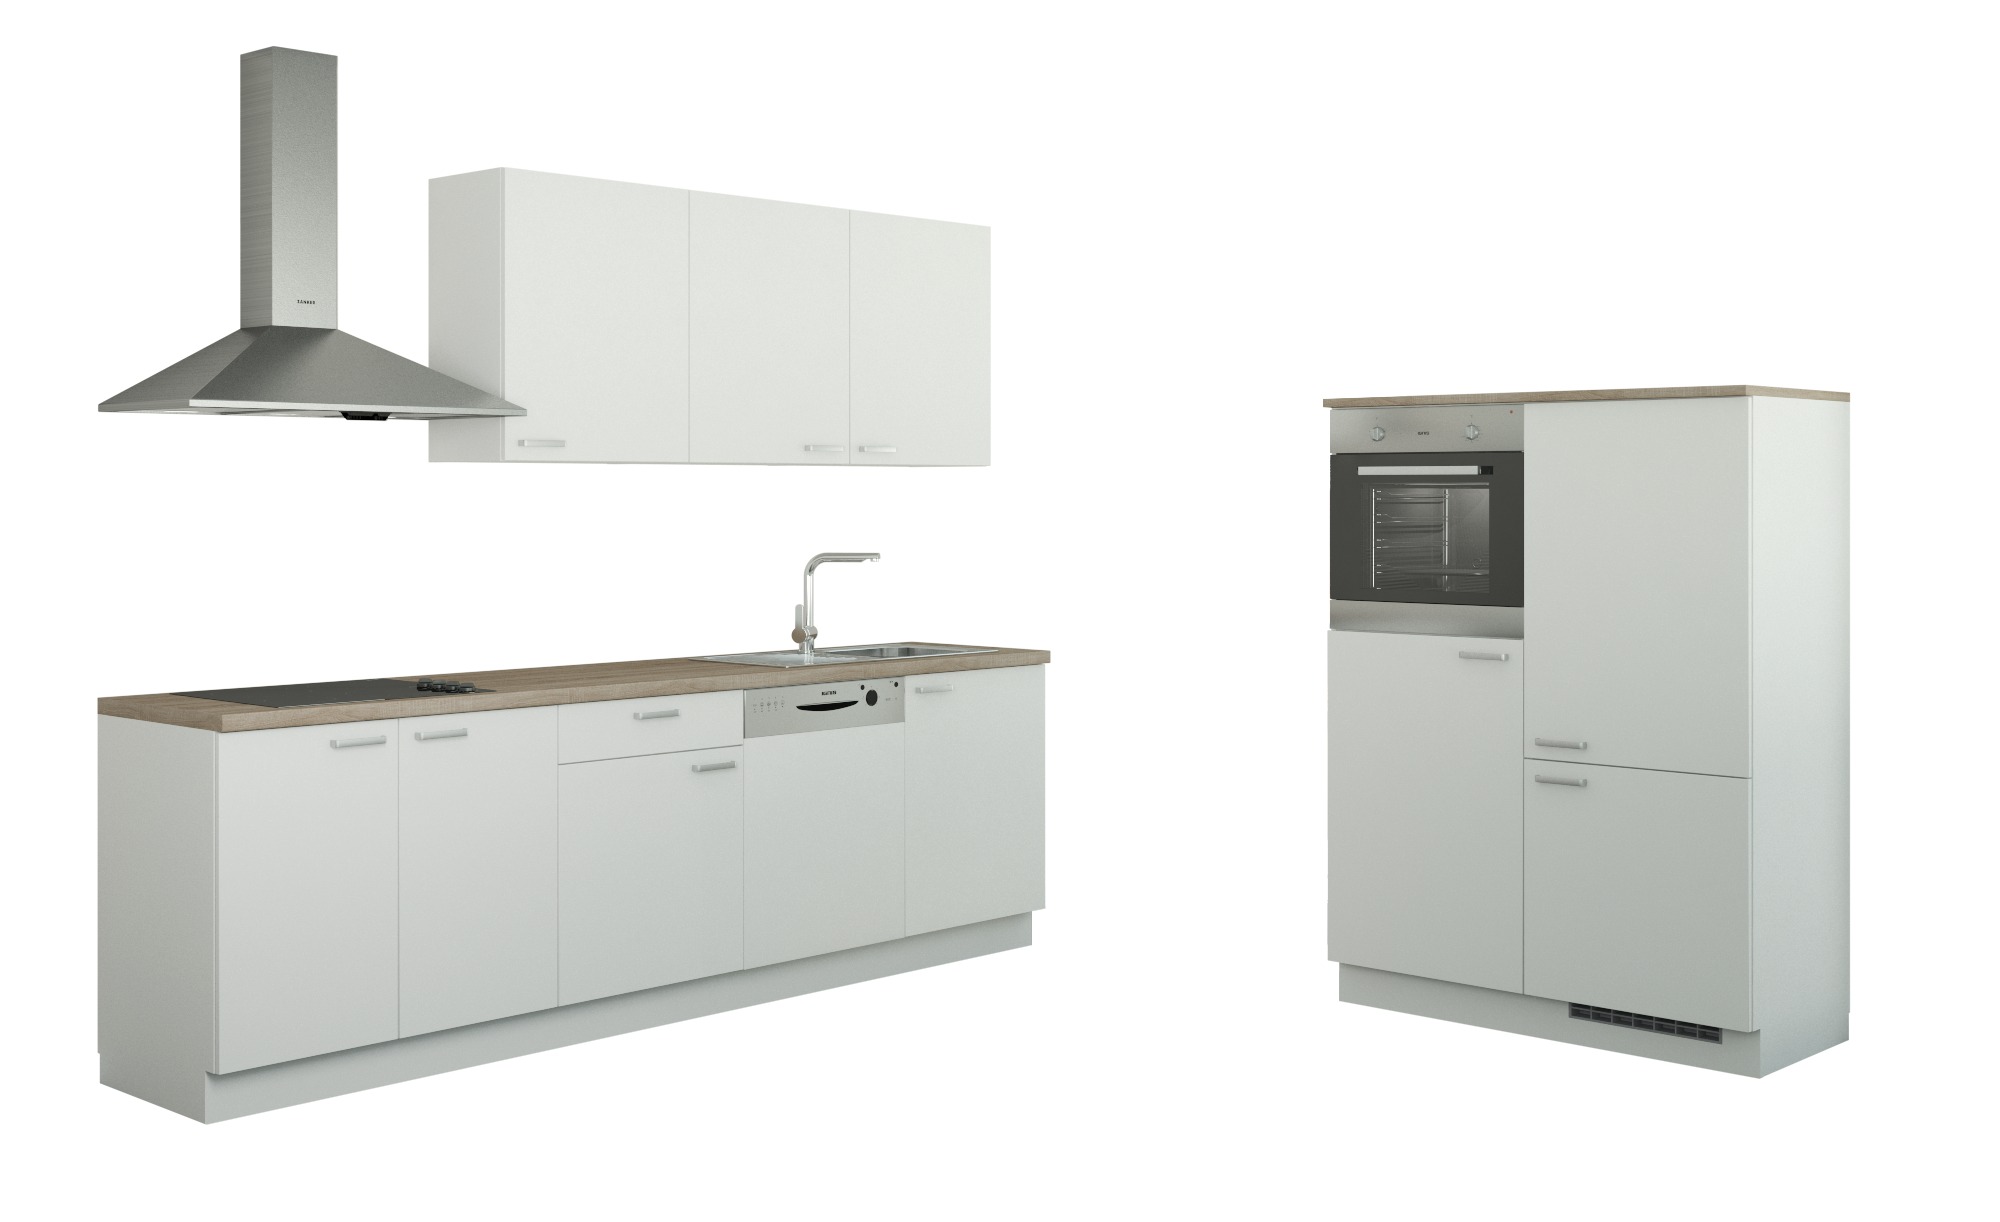 Küchenzeile Mit Elektrogeräten  Cottbus Küchen > Küchenblöcke Mit E-Geräten – Höffner